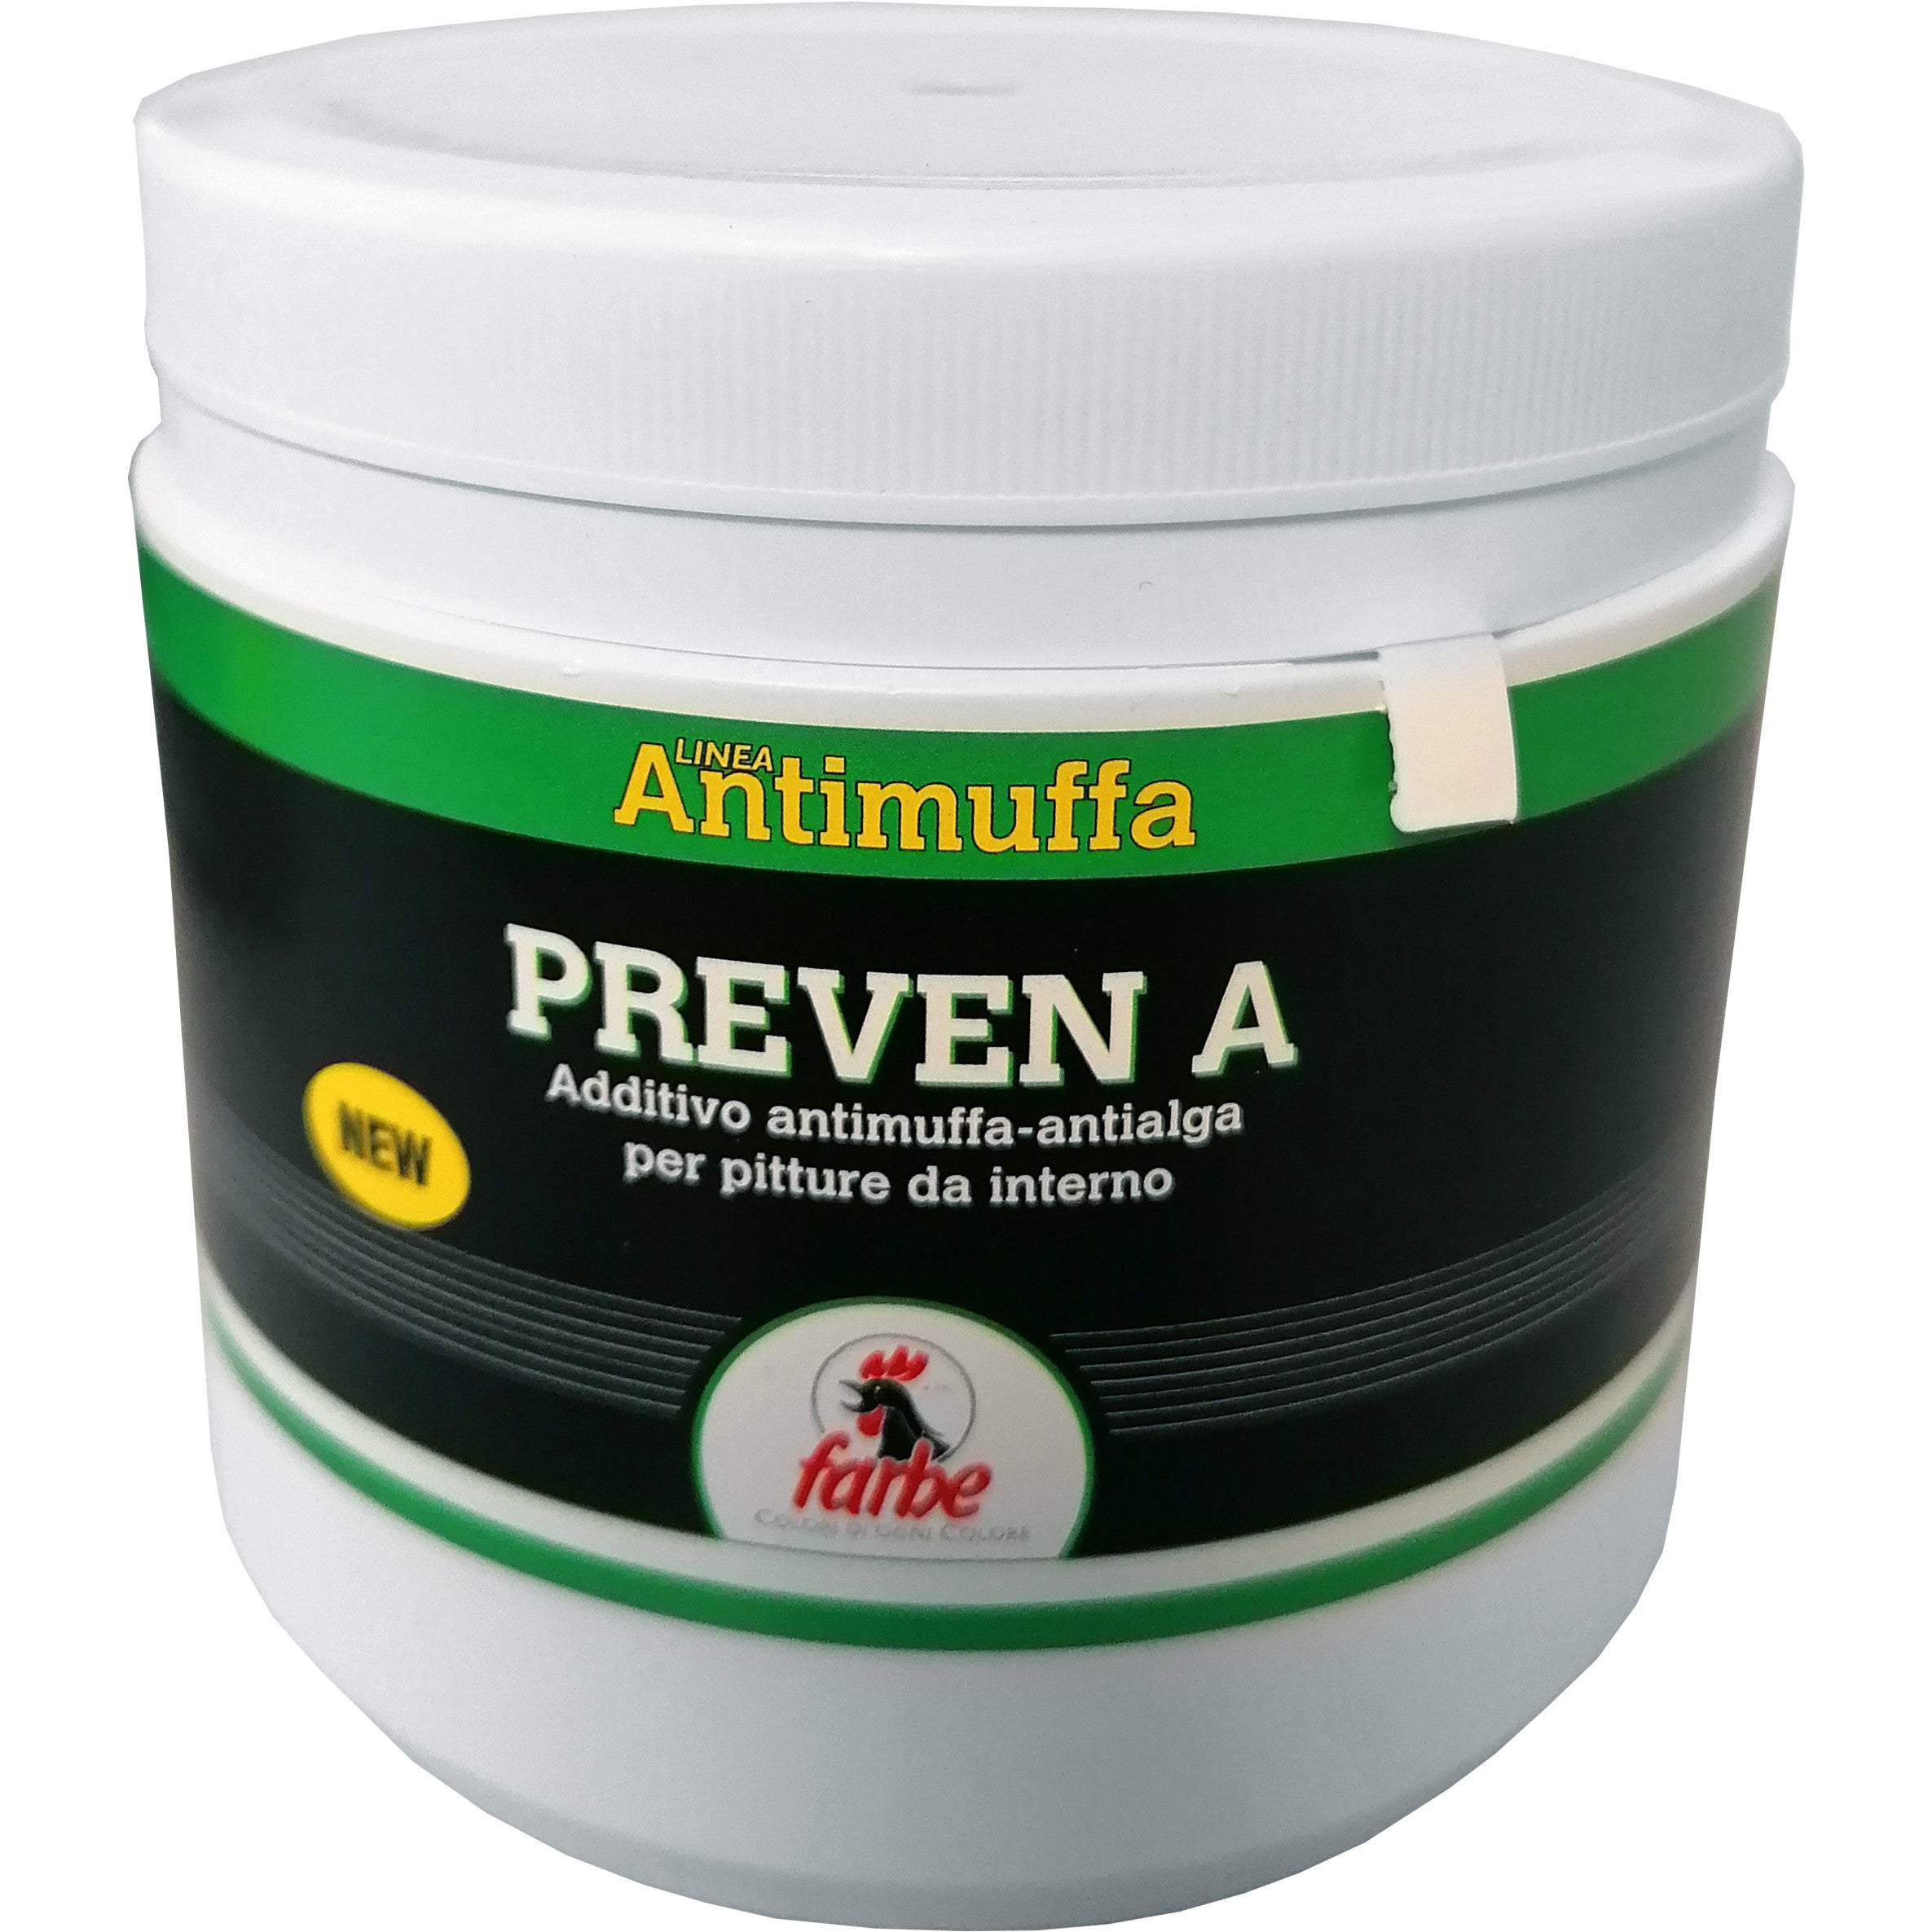 Antimuffa additivo preven/a da lt. 0.5 FARBE